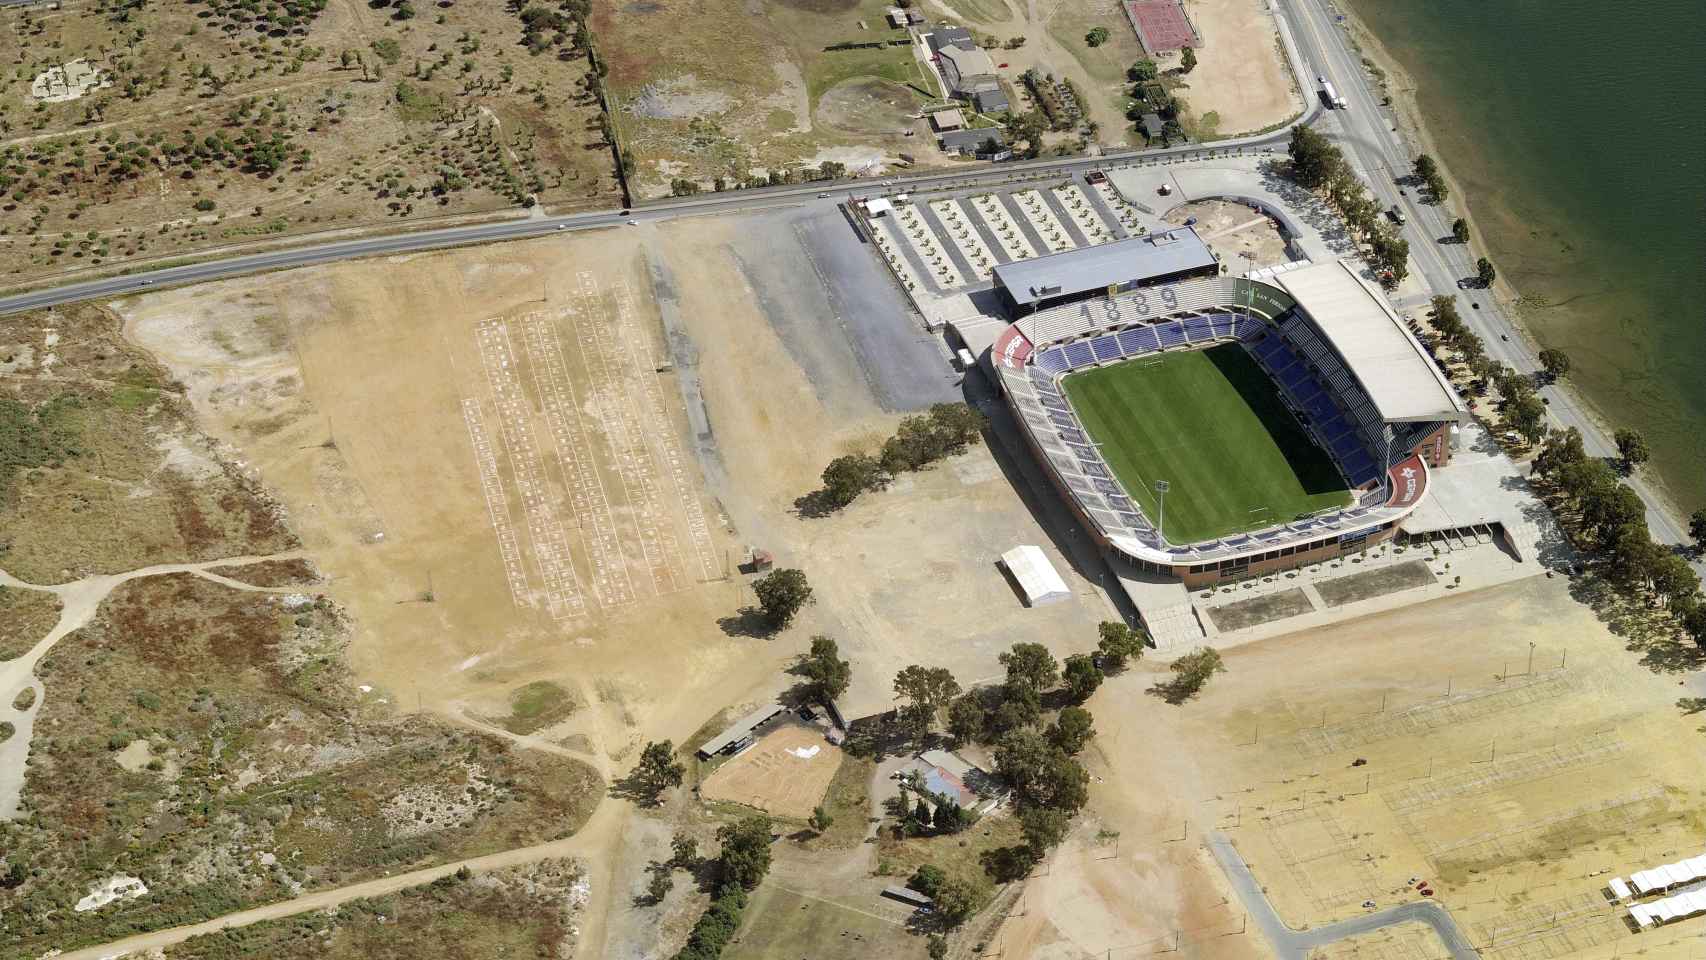 Vista aérea del estadio Nuevo Colombino, Huelva.